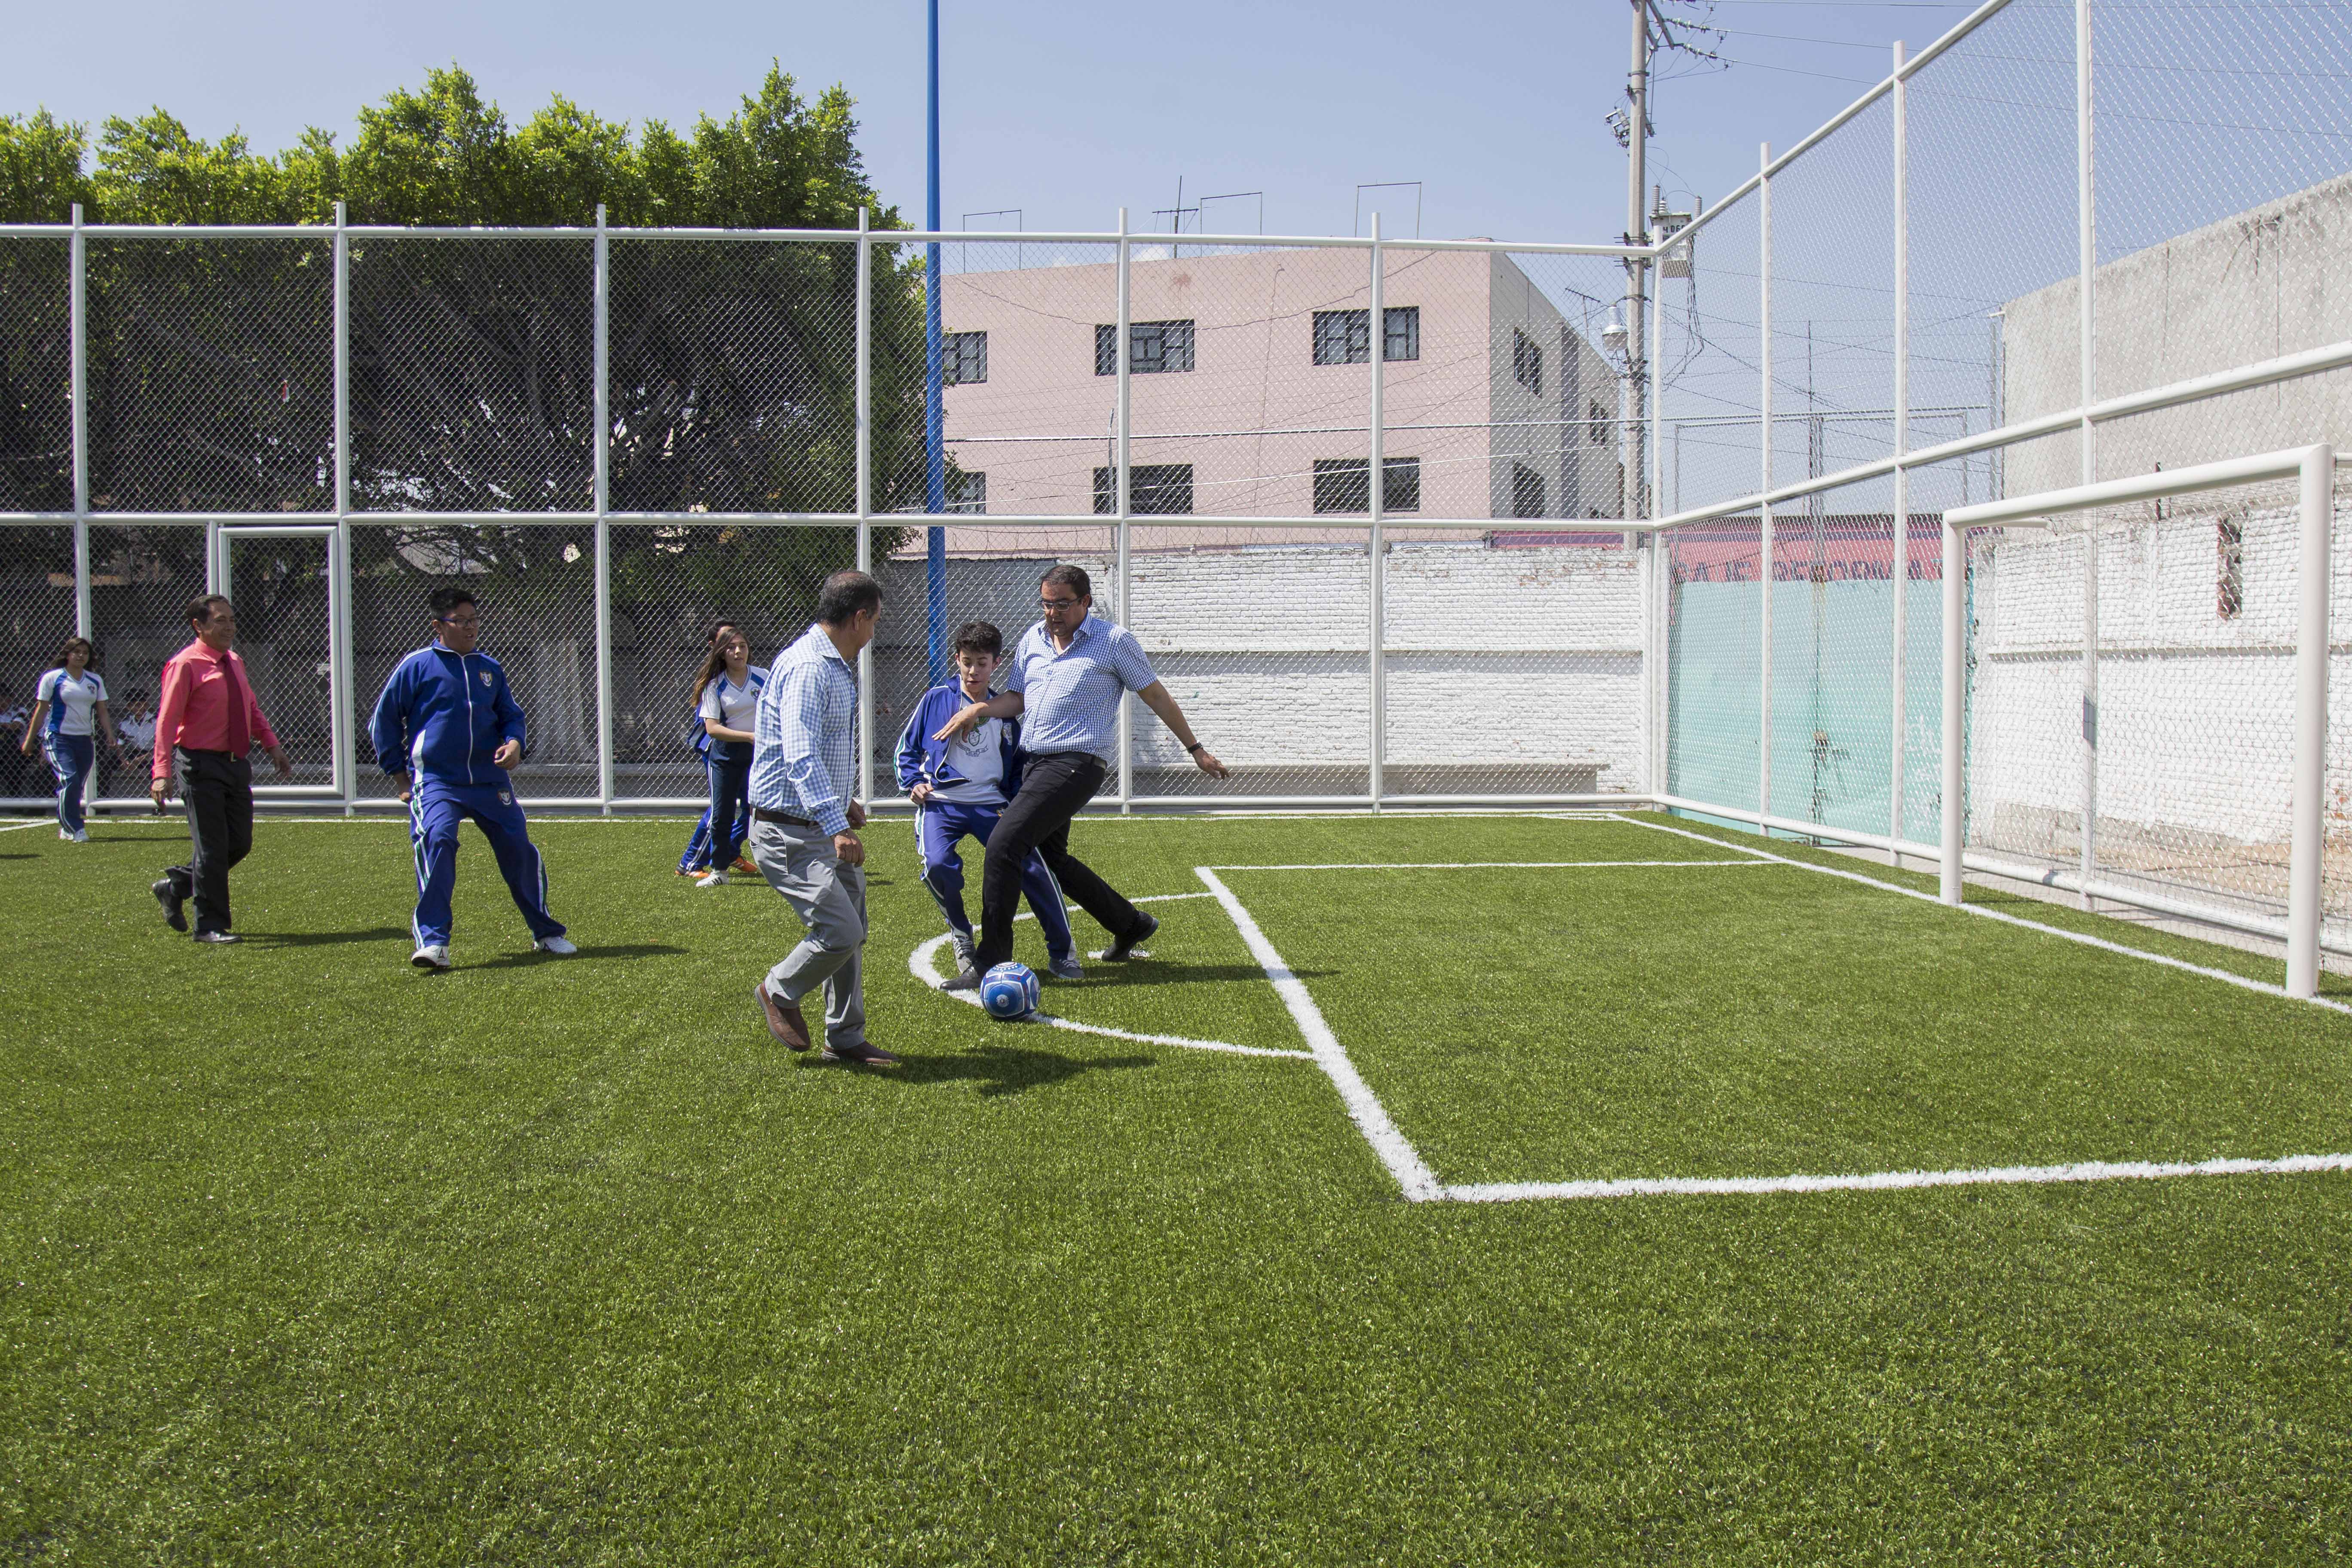  Entrega Memo Vega cancha de futbol y equipo deportivo a estudiantes de secundaria “Antonio Caso”